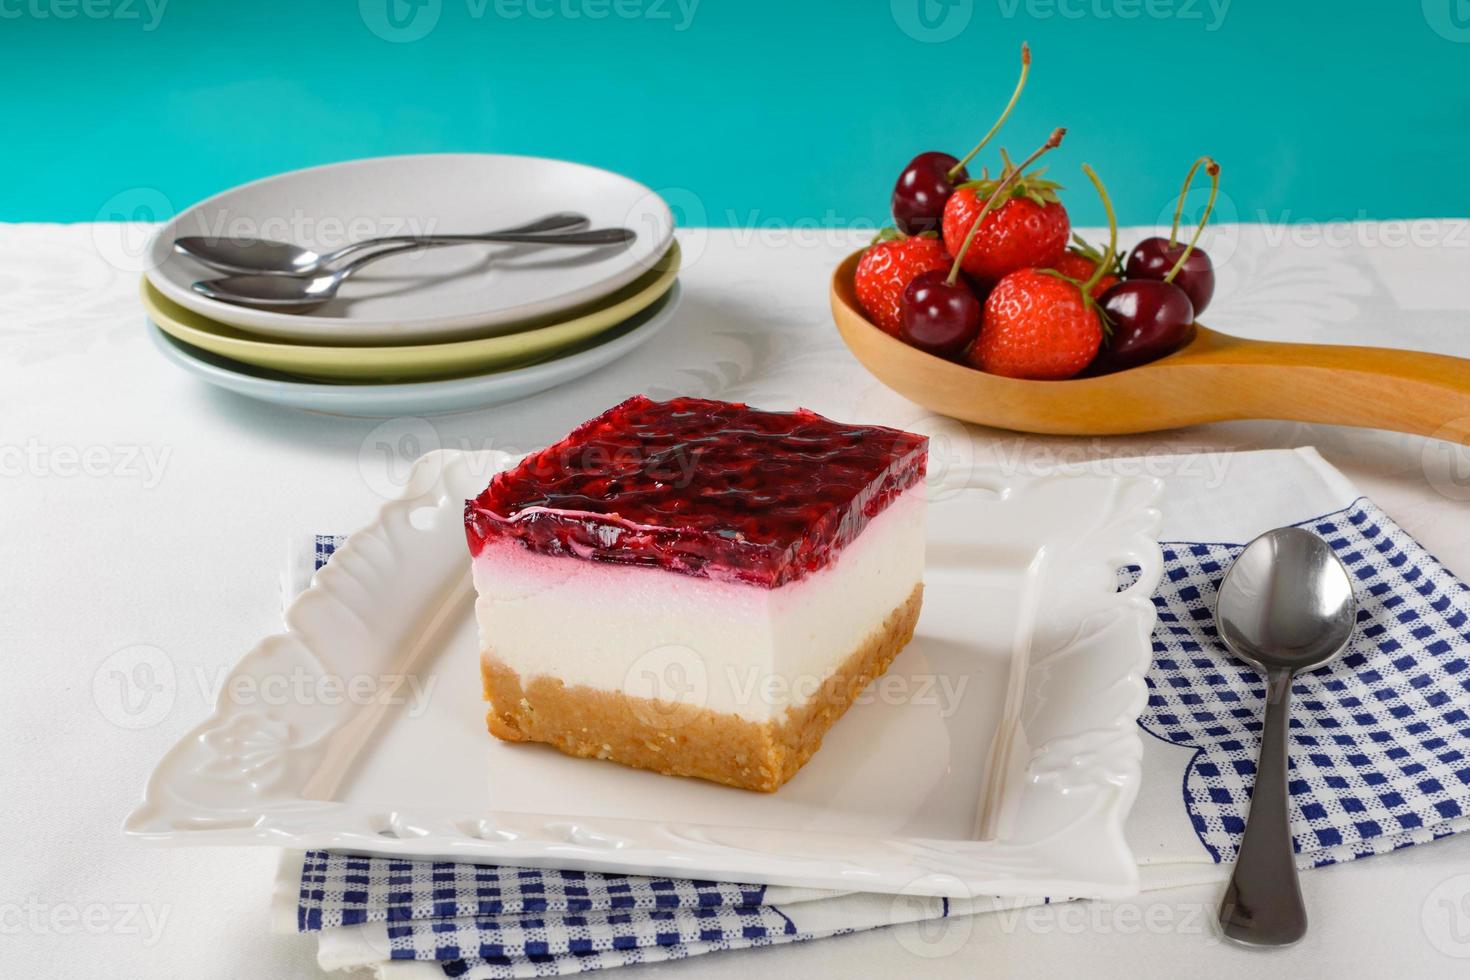 ostkaka med bär, färsk jordgubbe och körsbärostkaka på bordet. foto